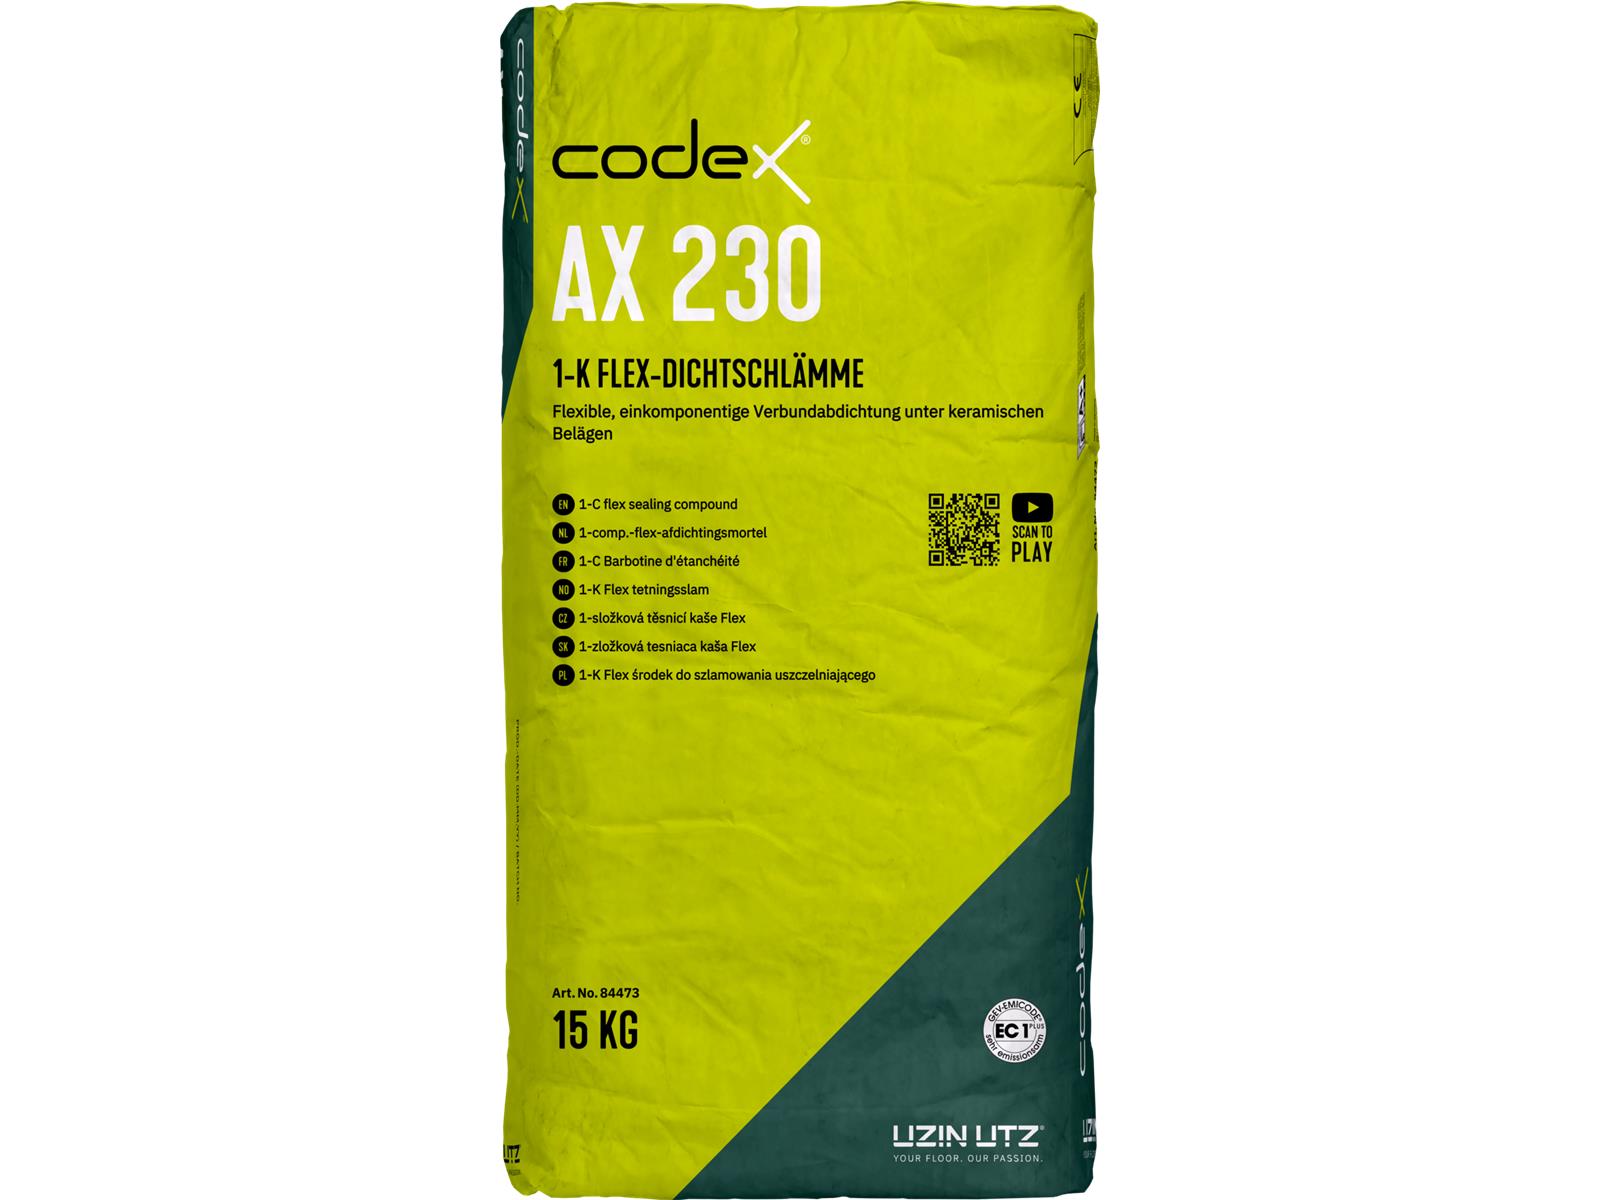 codex AX 230 - 15 kg